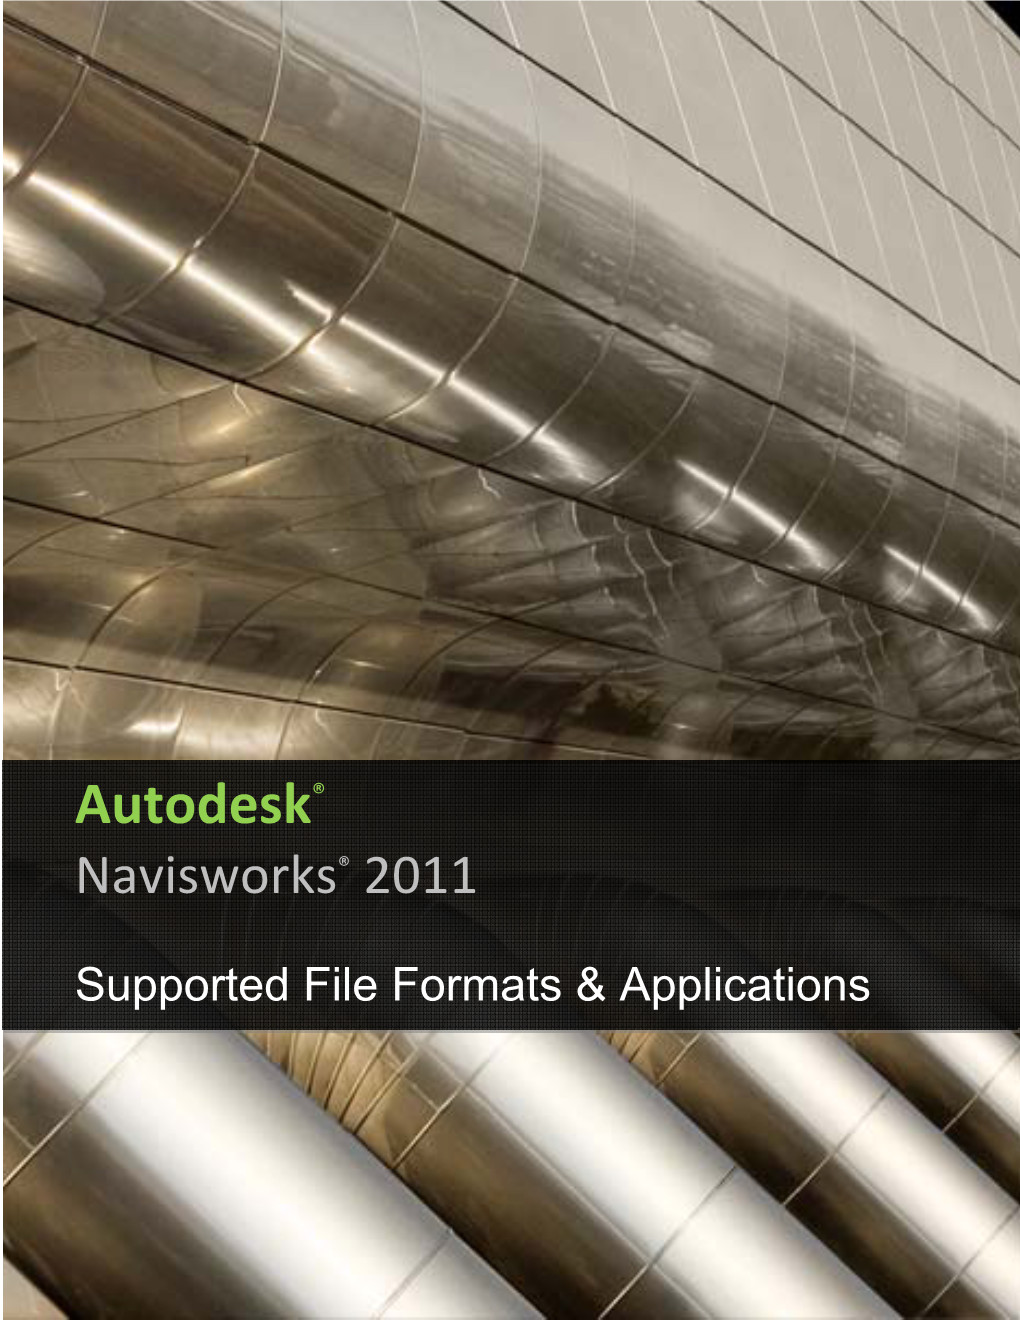 Autodesk® Navisworks® 2011 Supported File Formats